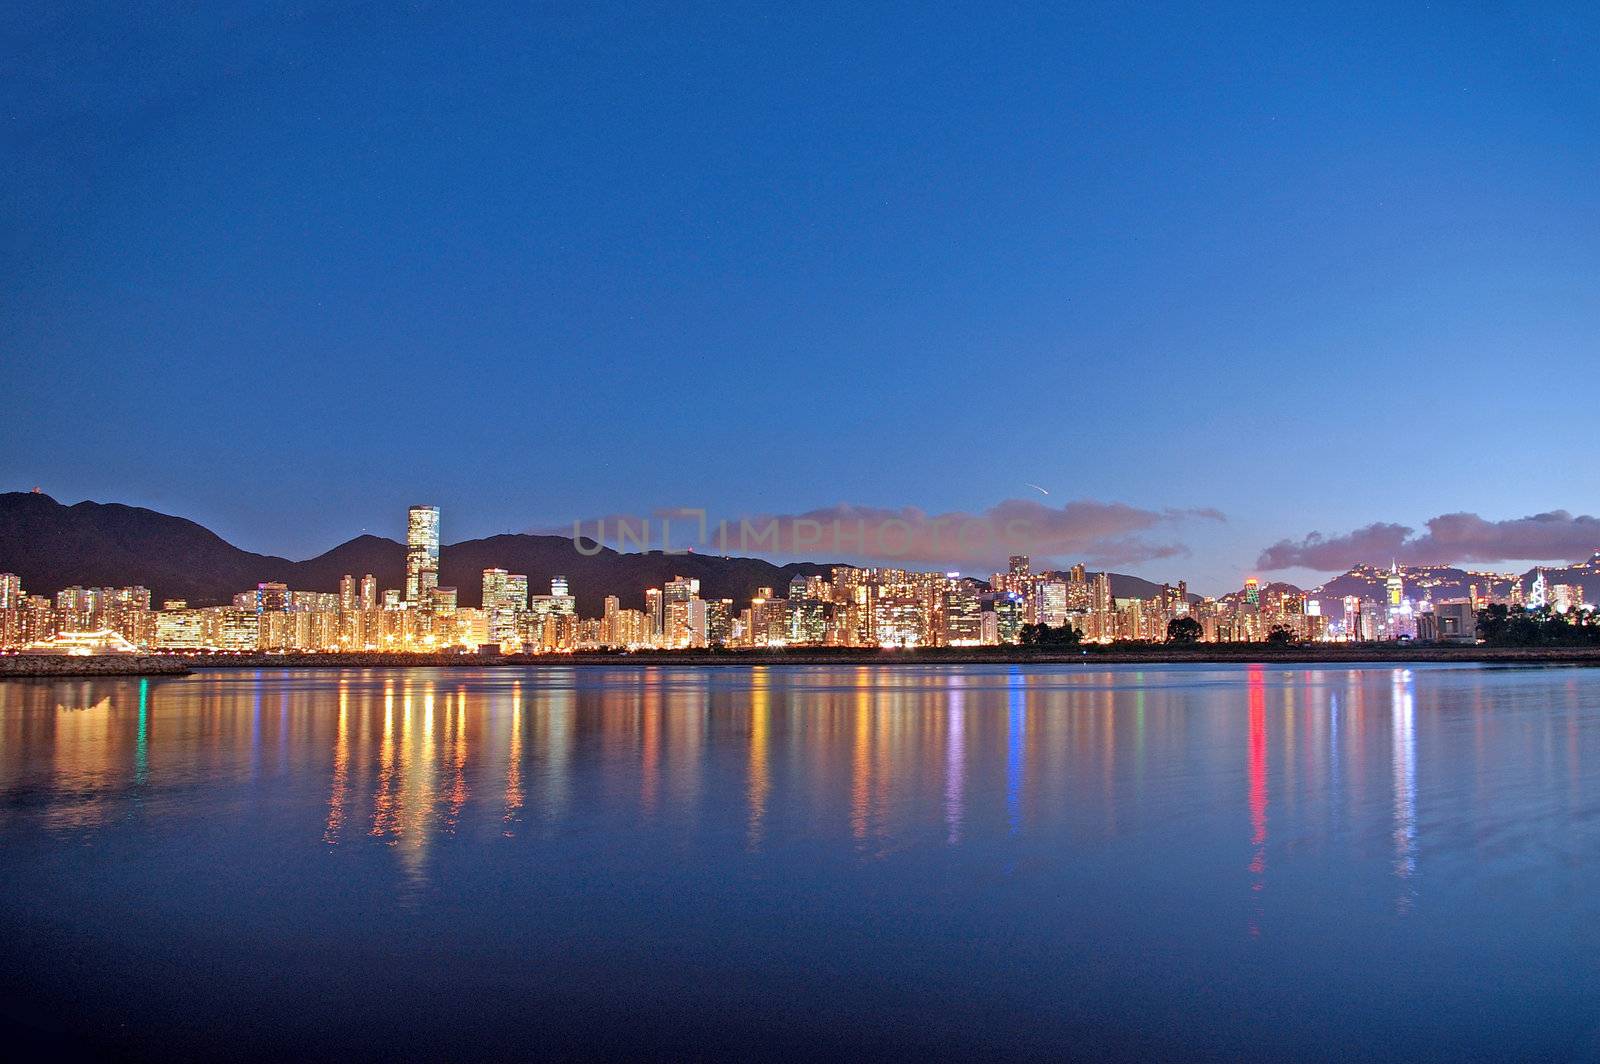 Hong Kong skyline by kawing921